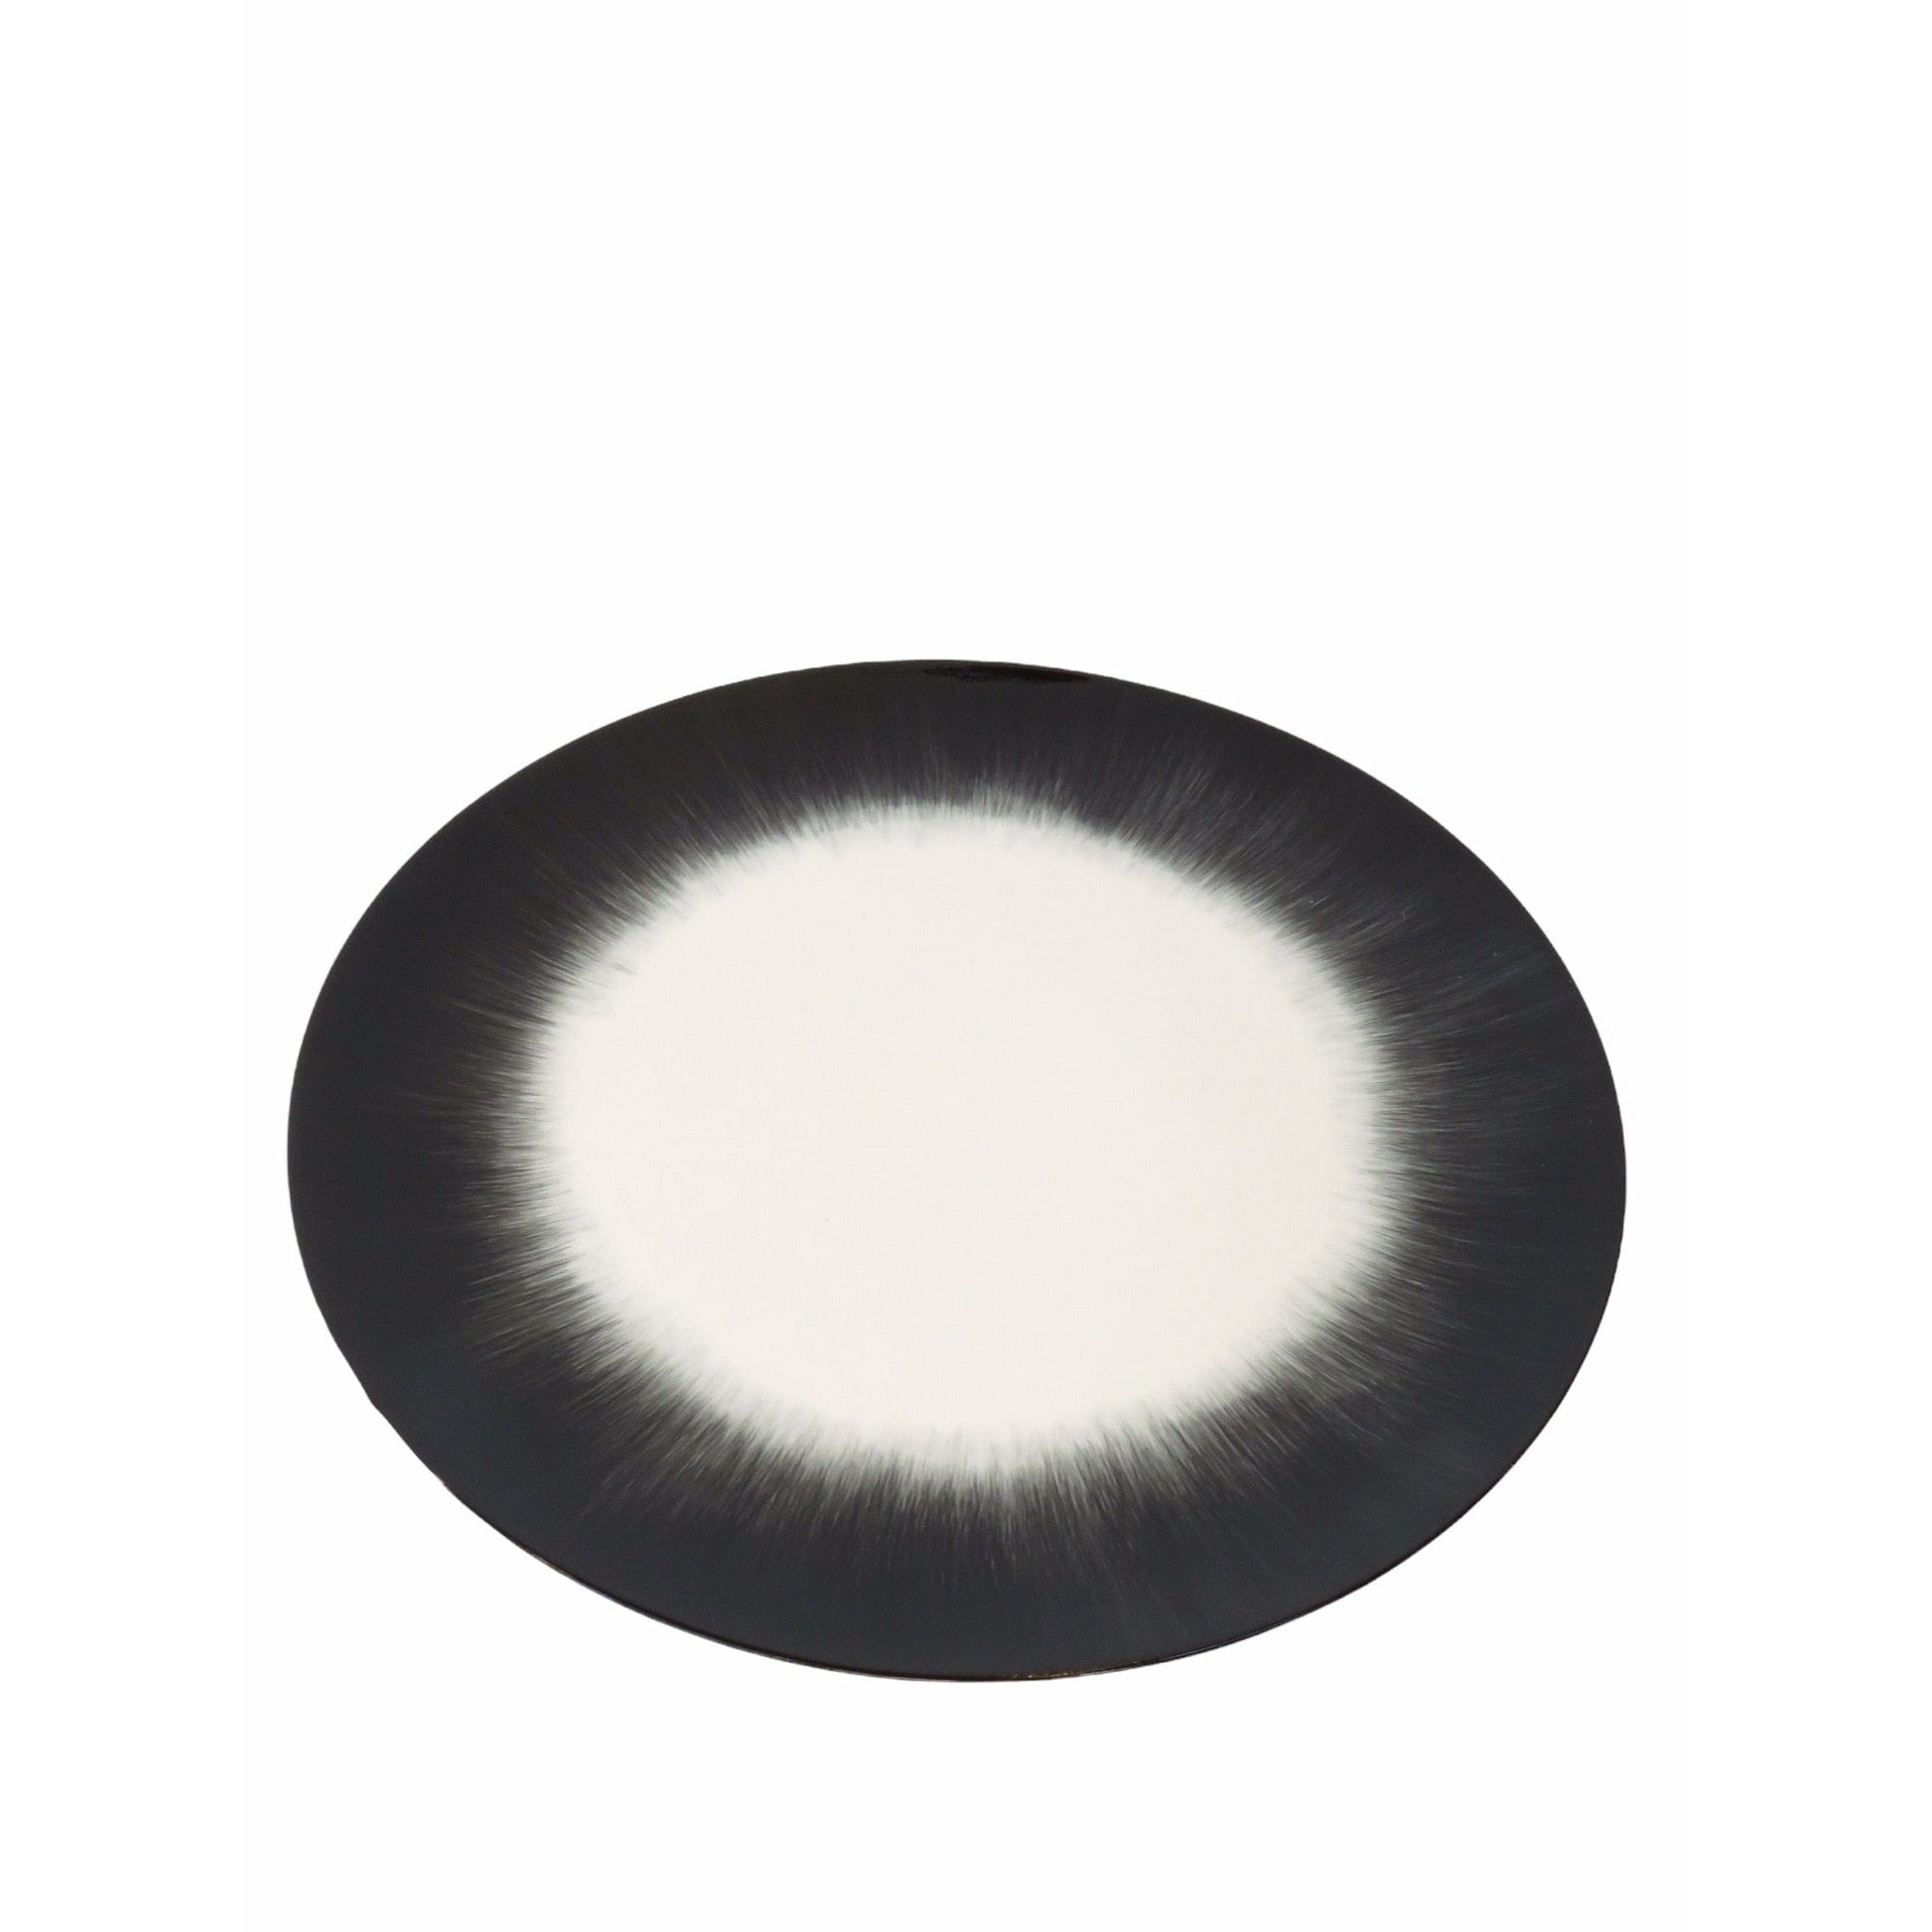 Ann Demeulemeester Home Home 28 centimeter / Off-white & black / Porcelain Ann Demeulemeester for Serax 28 cm plates (set of two)